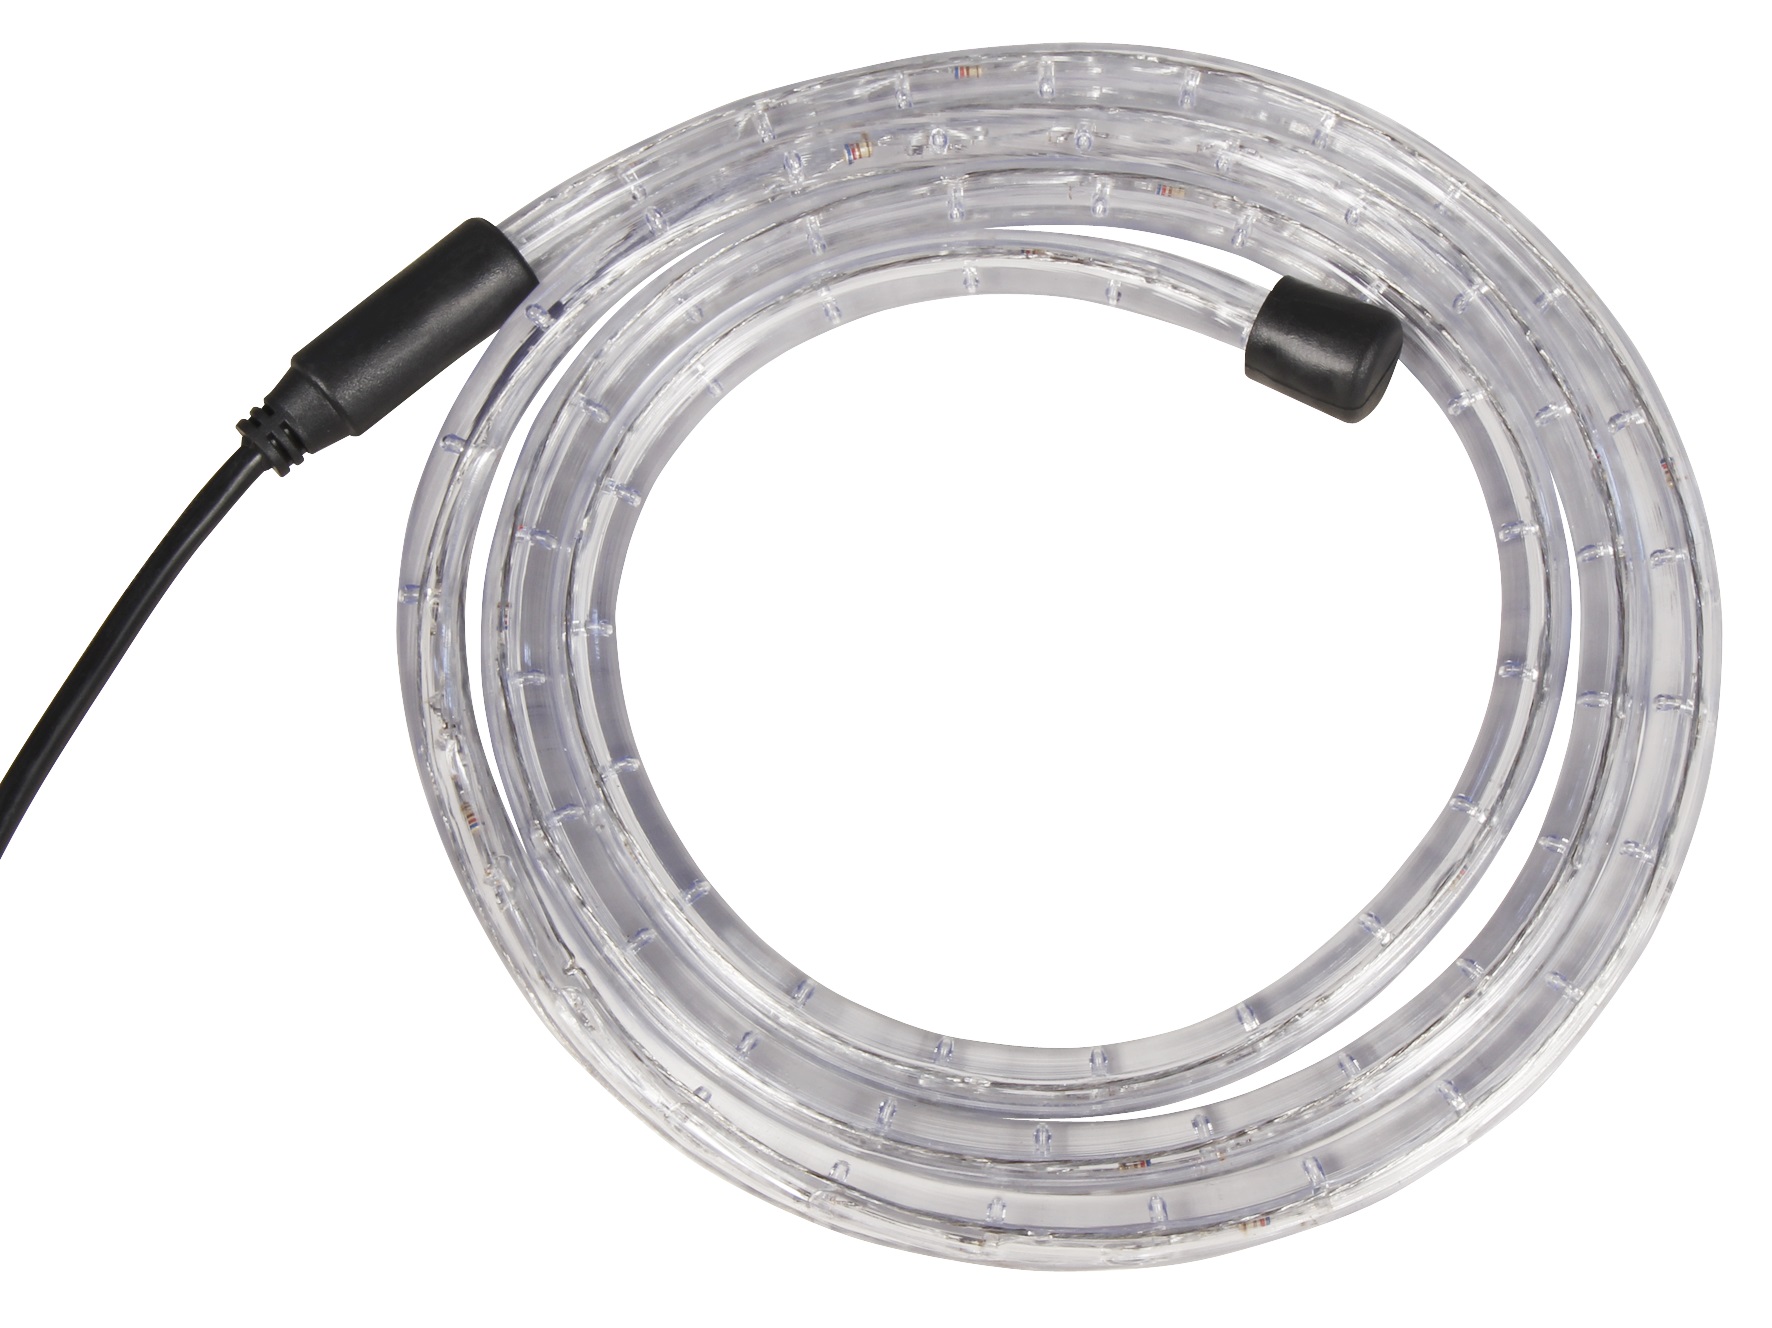 LED-Lichtschlauch McShine, 10m - Bild 1